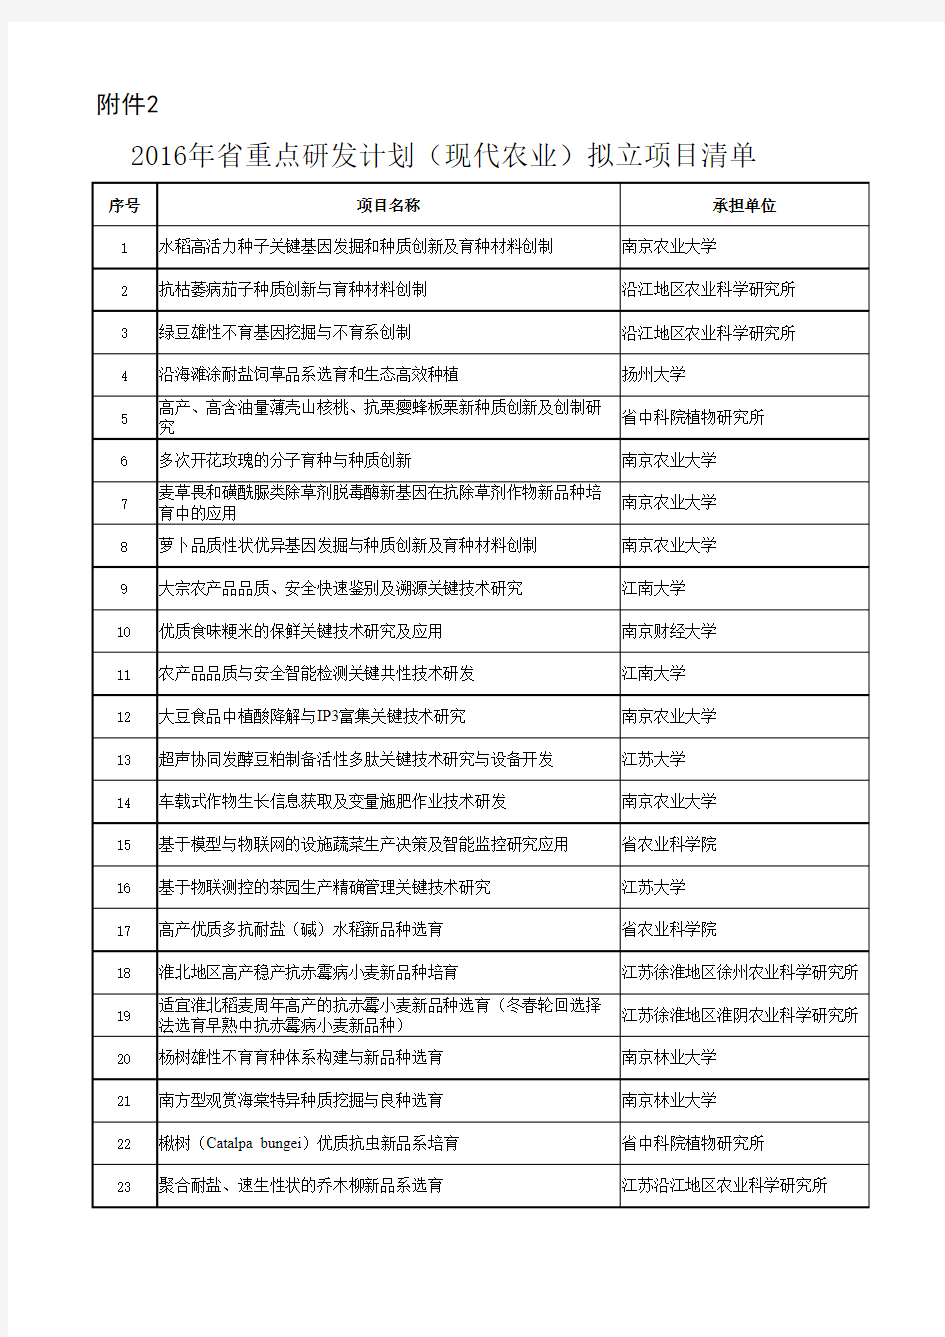 2016年江苏省重点研发计划(现代农业)拟立项目清单